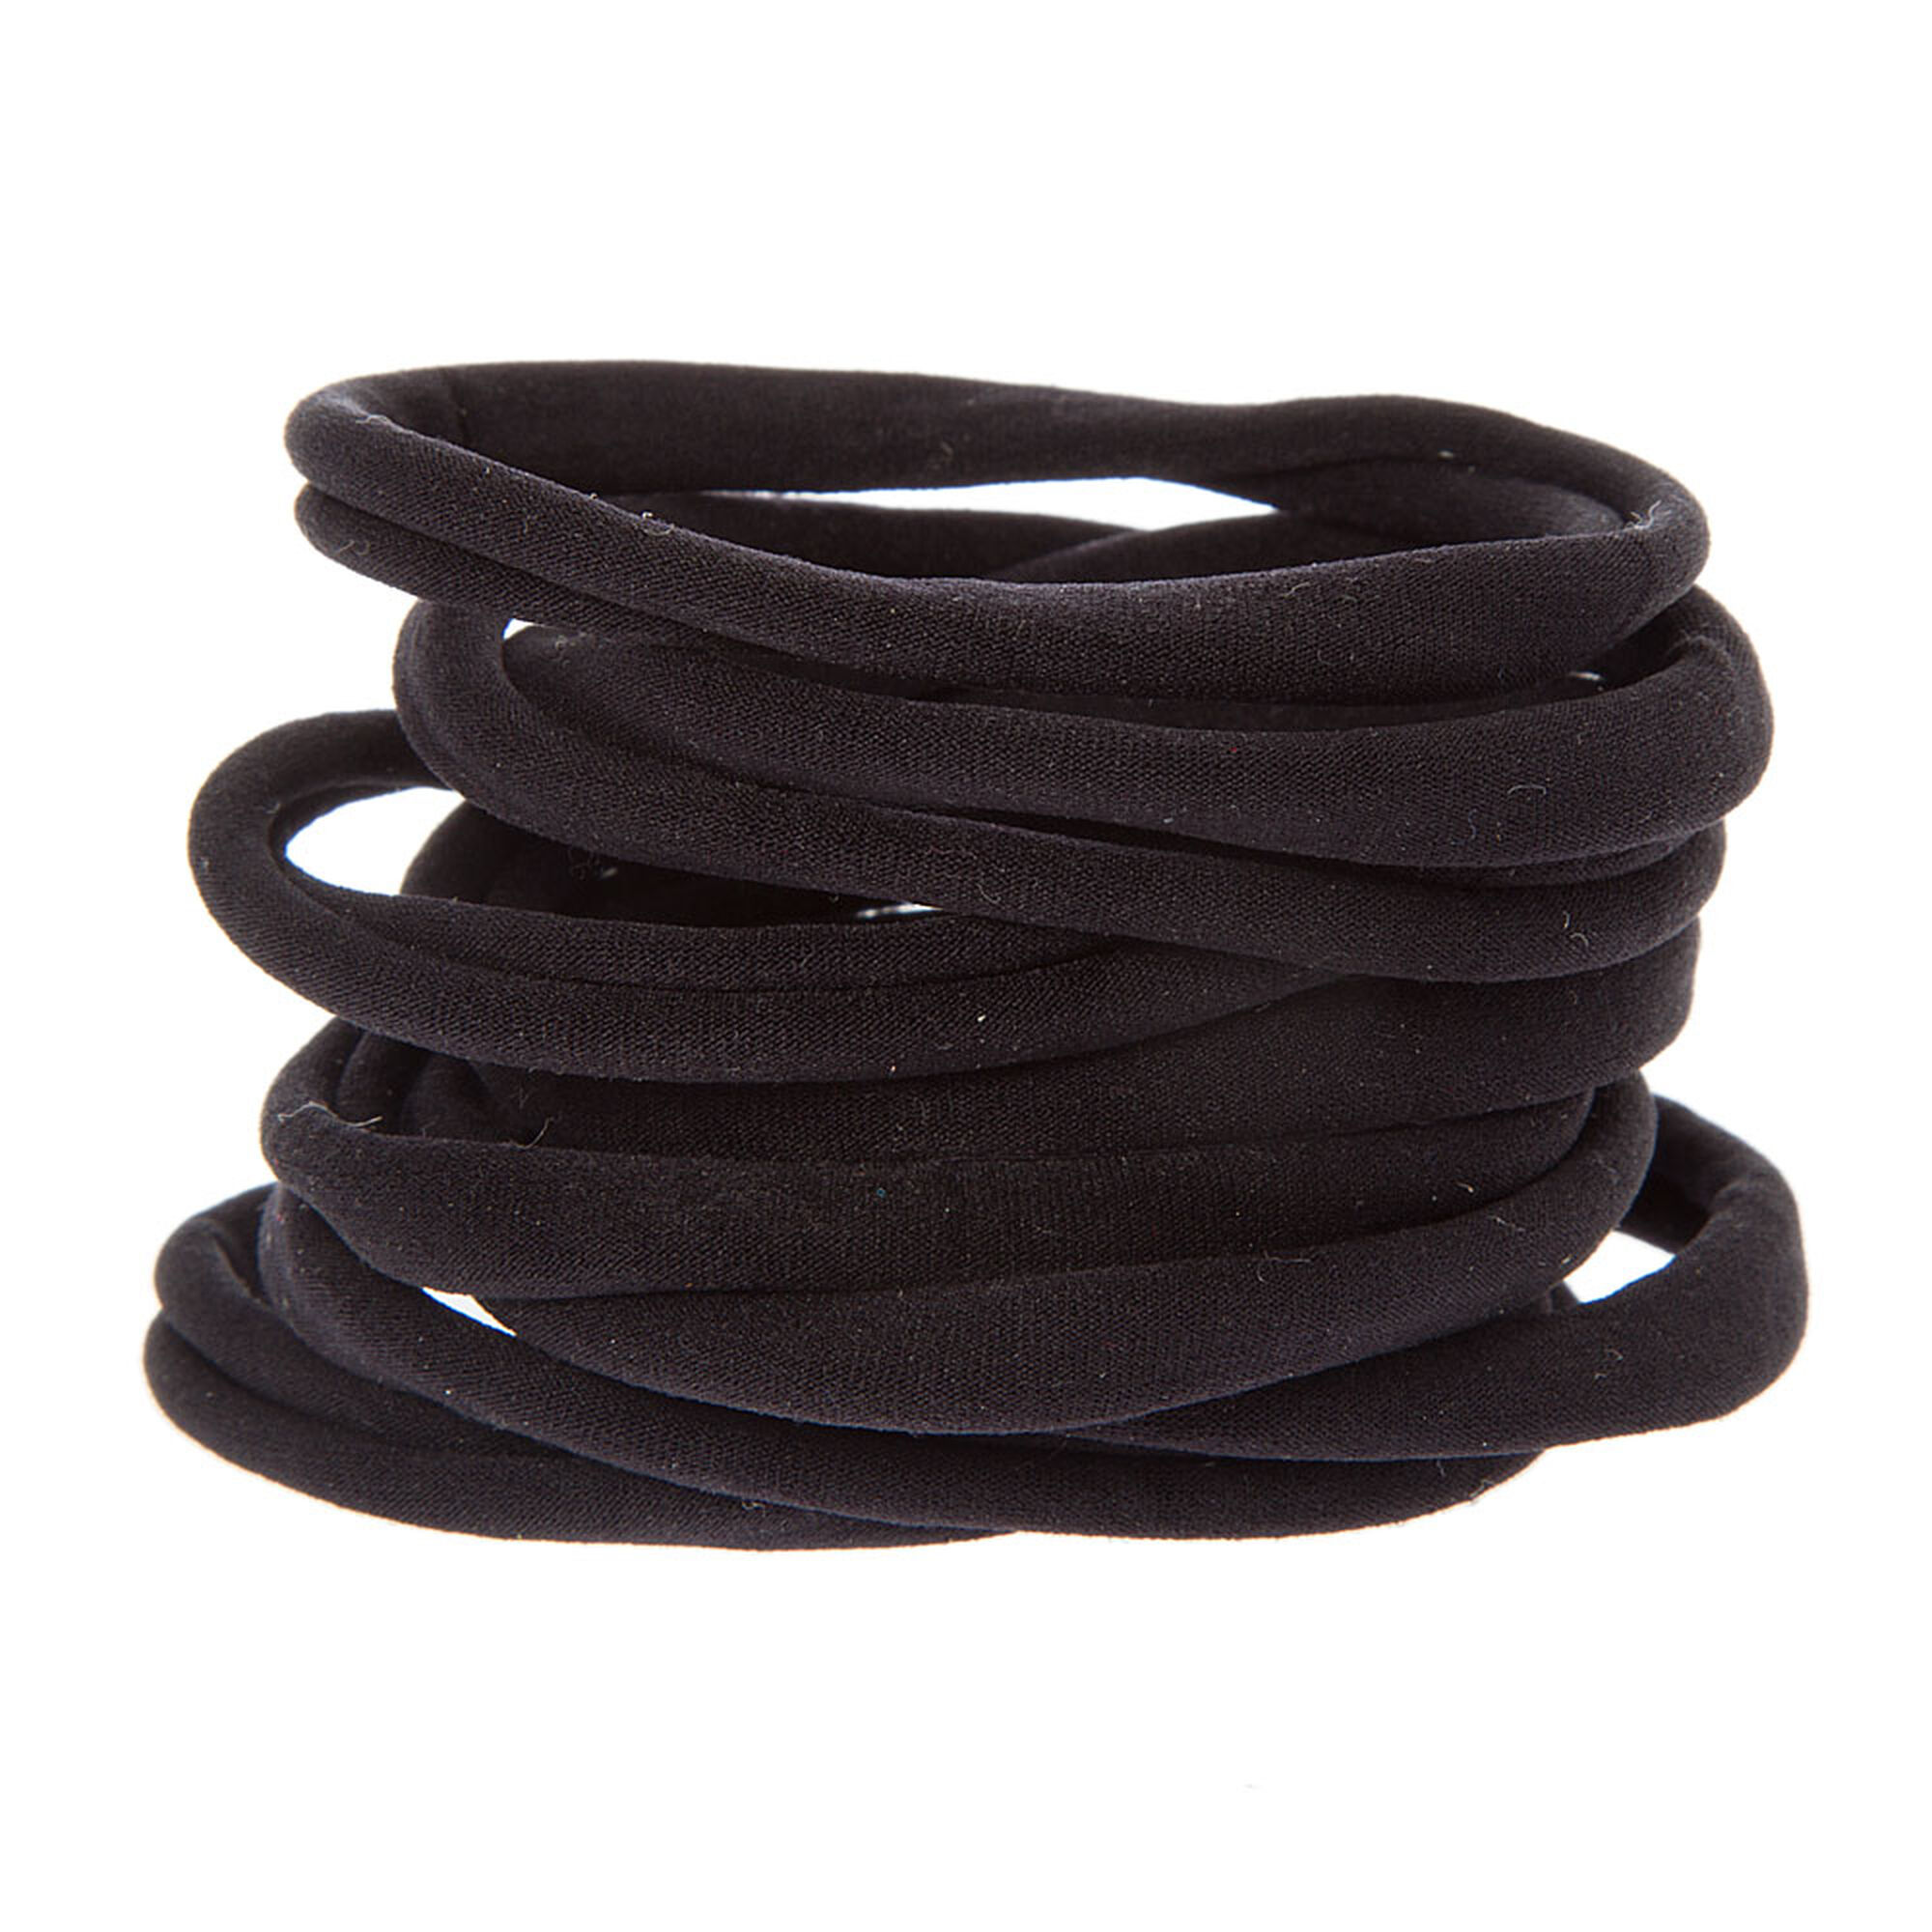 Rolled Hair Ties - Black, 10 Pack